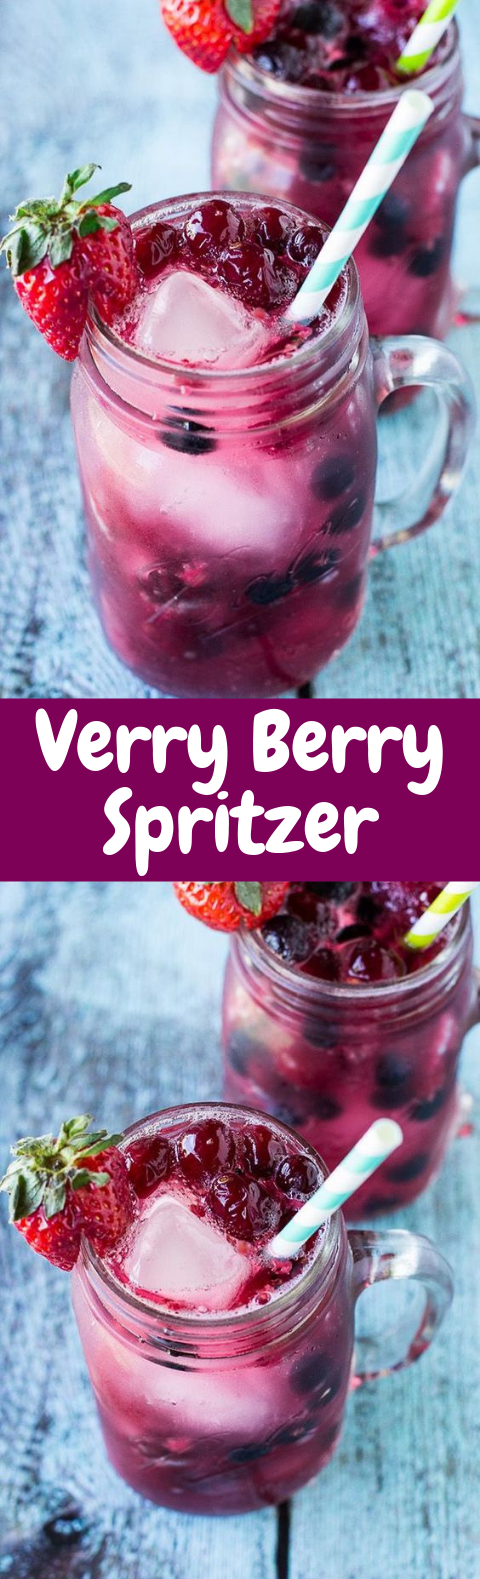 Very Berry Spritzer #Summer #Drink